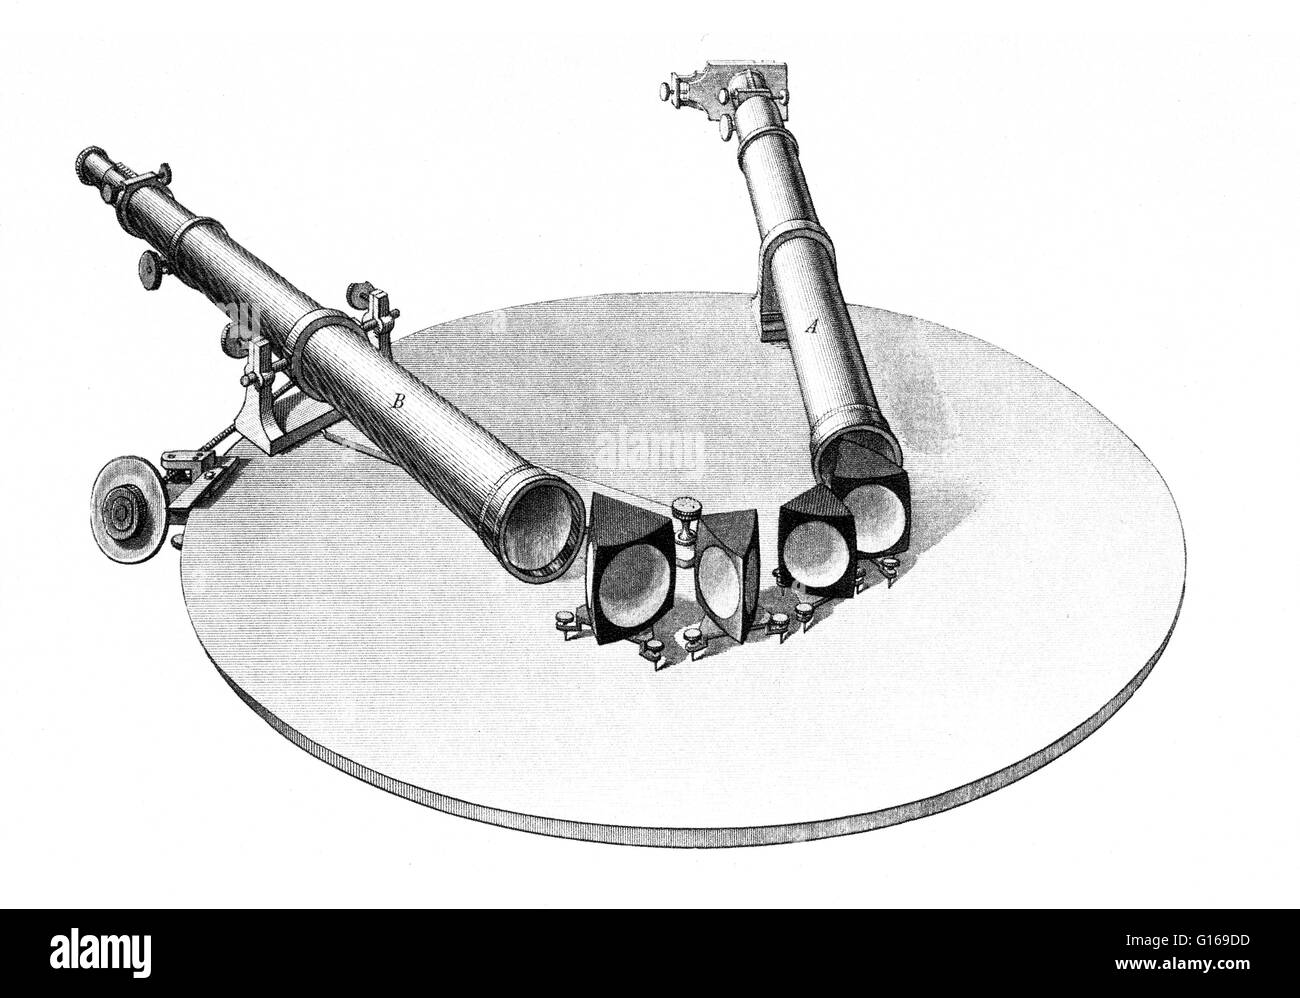 Illustrazione di uno spettroscopio presi dal 1861 edizione tedesca di Kirchoff's, studi dello spettro solare e gli spettri di elementi chimici". Nel 1855 Robert Bunsen aveva creato il becco Bunsen per uso in prove di fiamma di vari metalli e sale Foto Stock